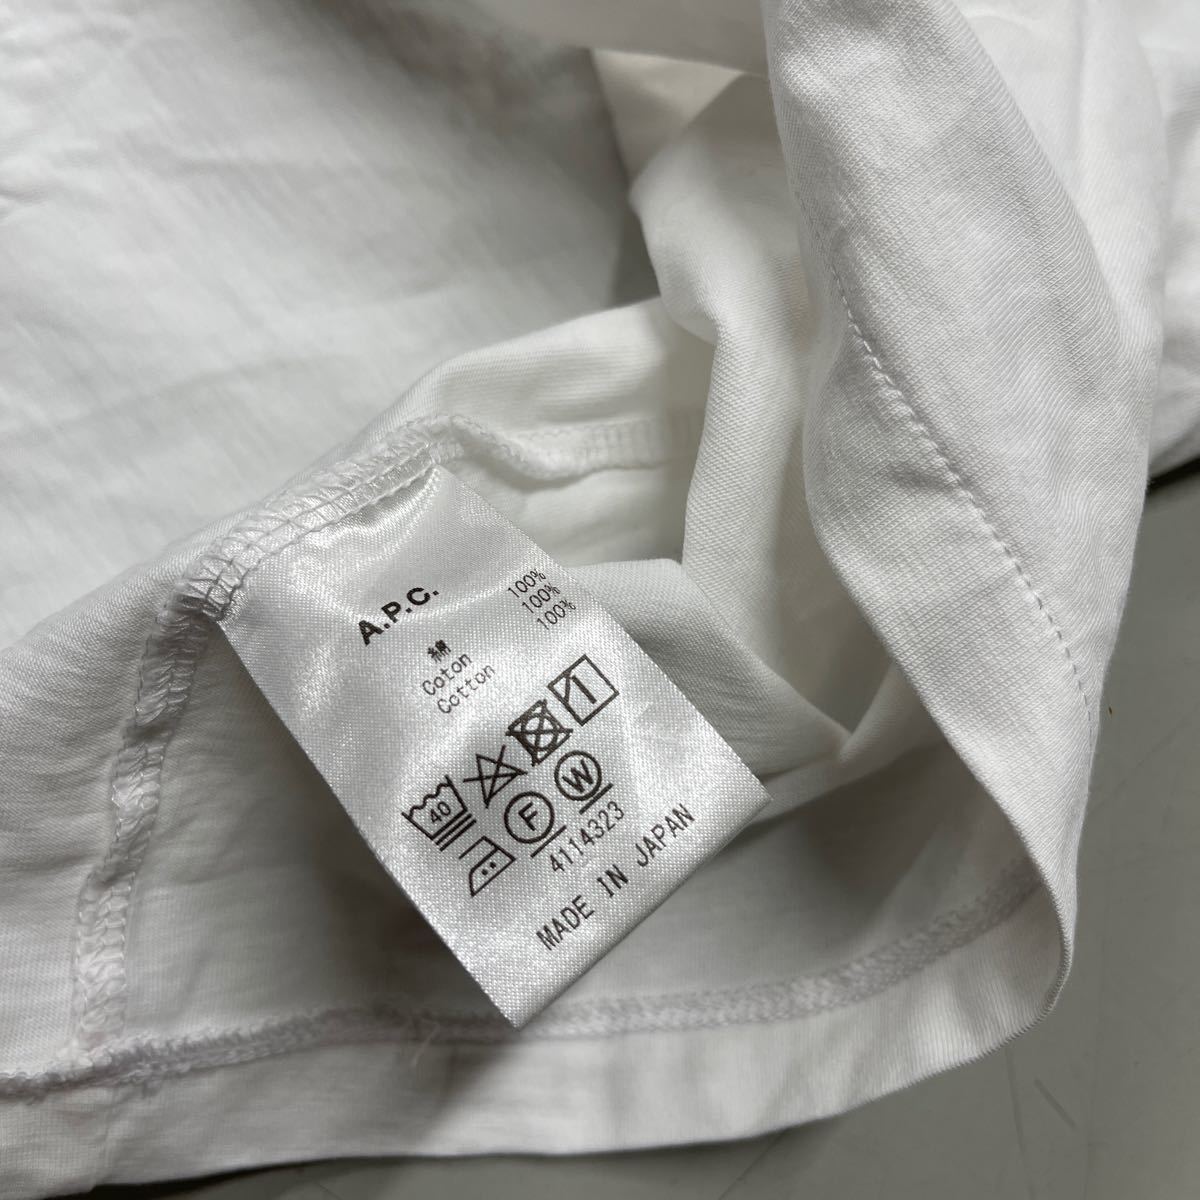 A.P.C. APC アーペーセー カットソー 半袖 Tシャツ レディース XSサイズ 白 ホワイト ポケT ポケット付きTシャツ 日本製 MADE IN JAPAN_画像6